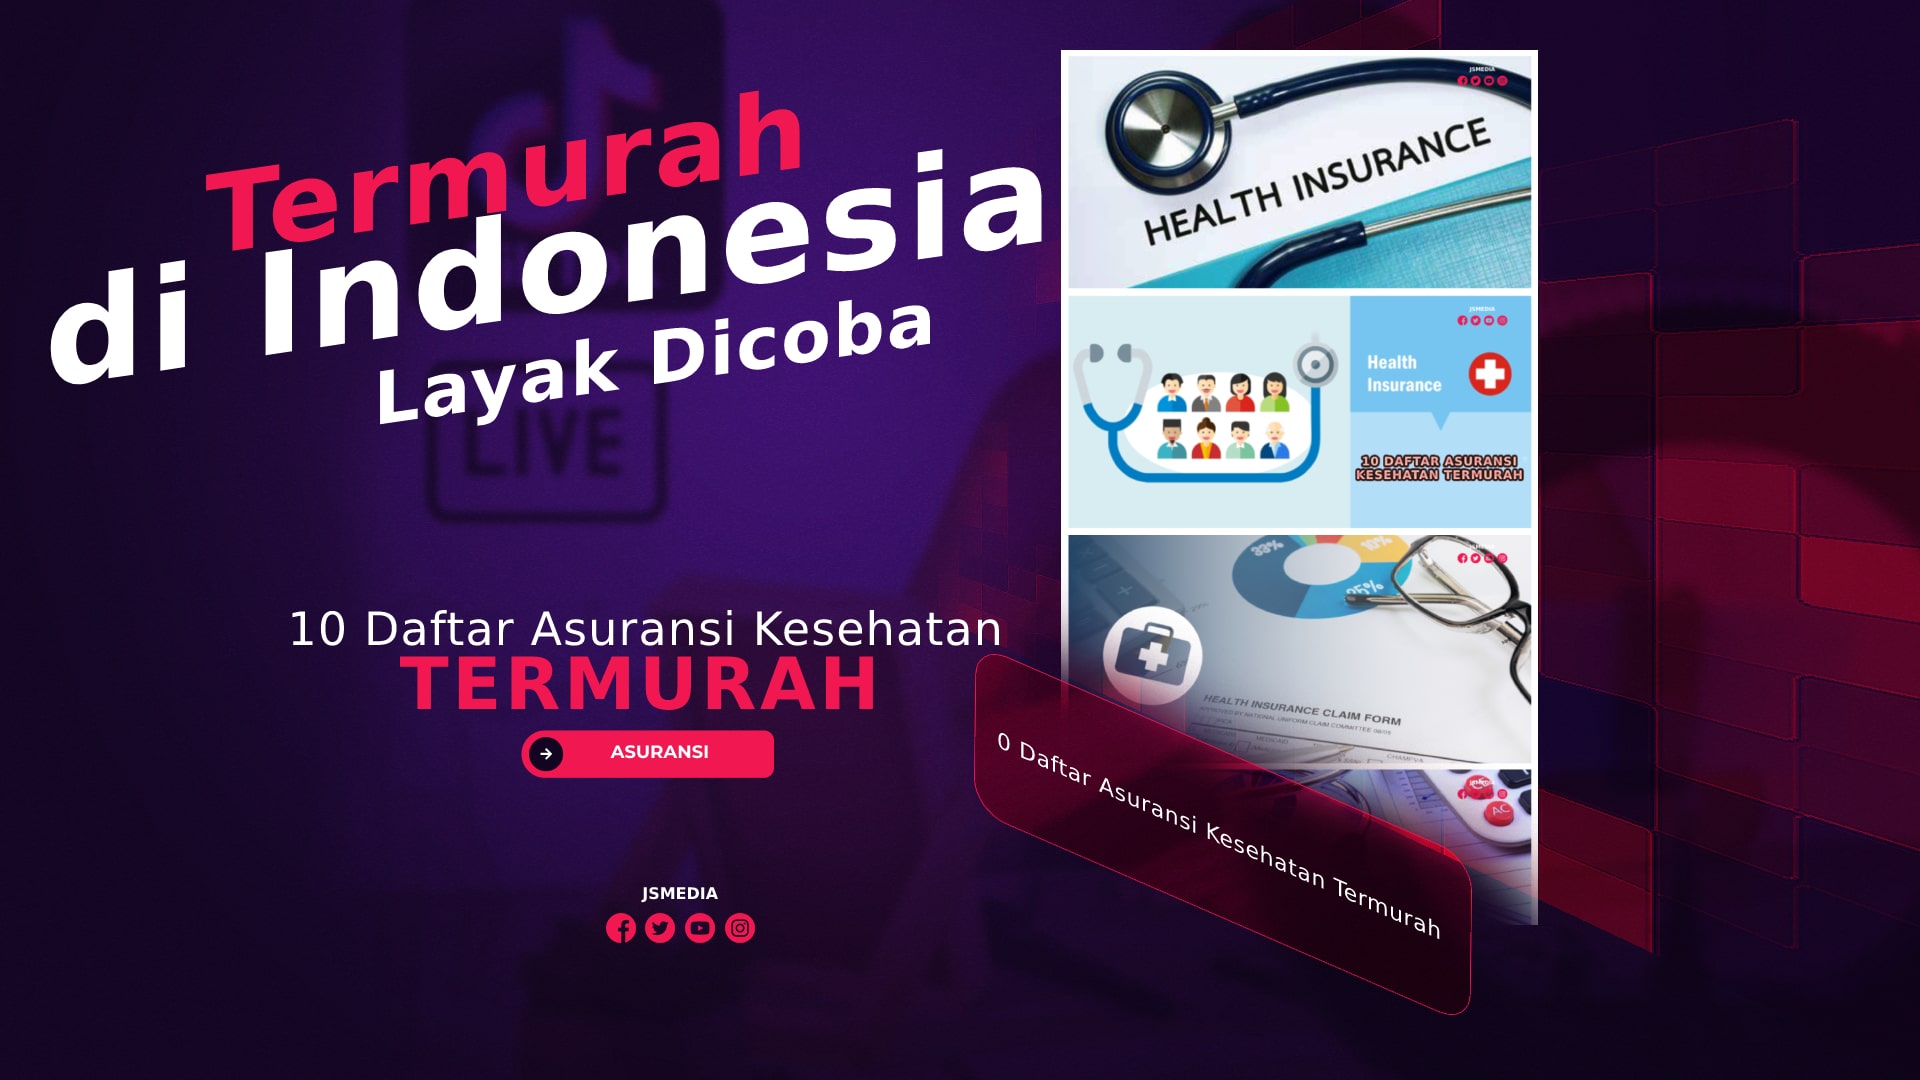 10 Daftar Asuransi Kesehatan Termurah di Indonesia Layak Dicoba